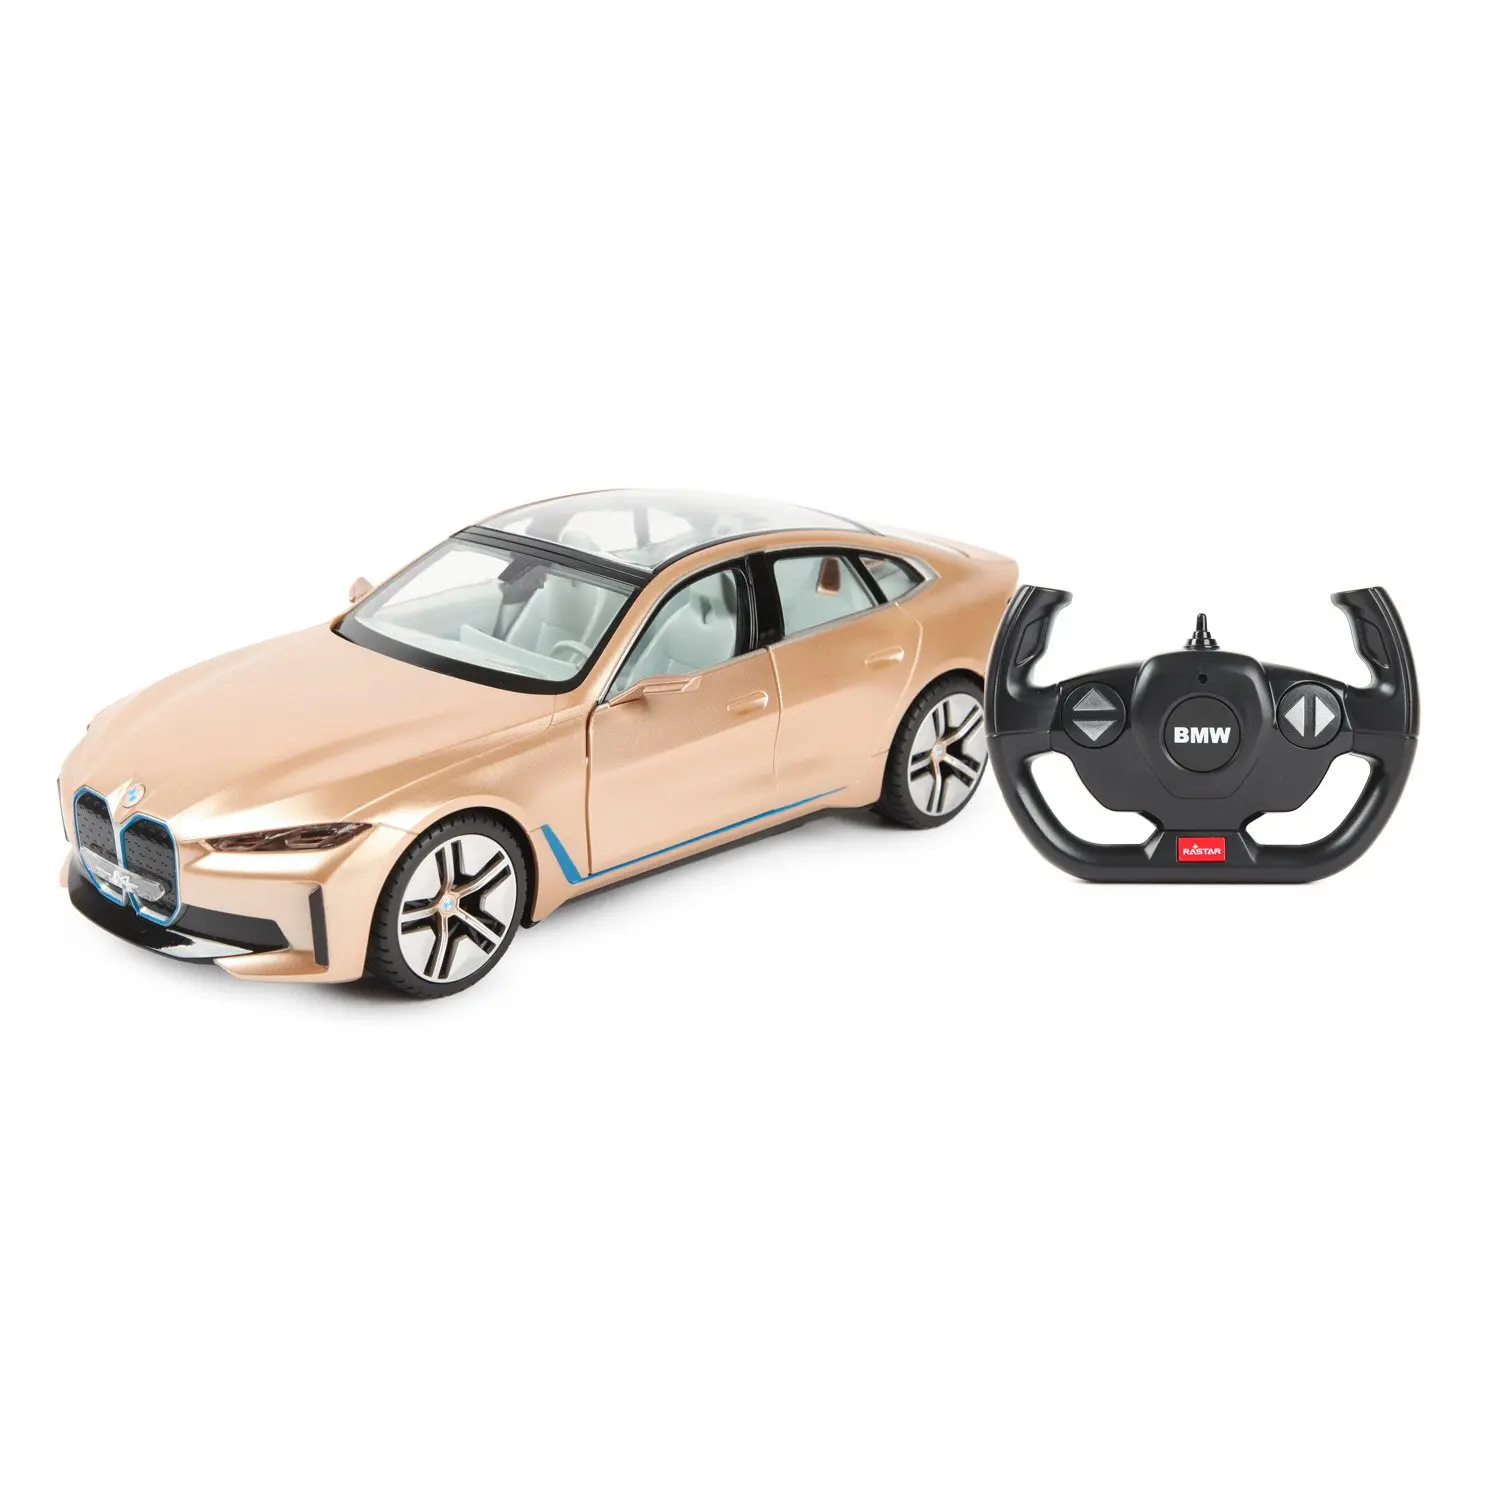 Машина р/у 1:14 BMW i4 Concept - фото